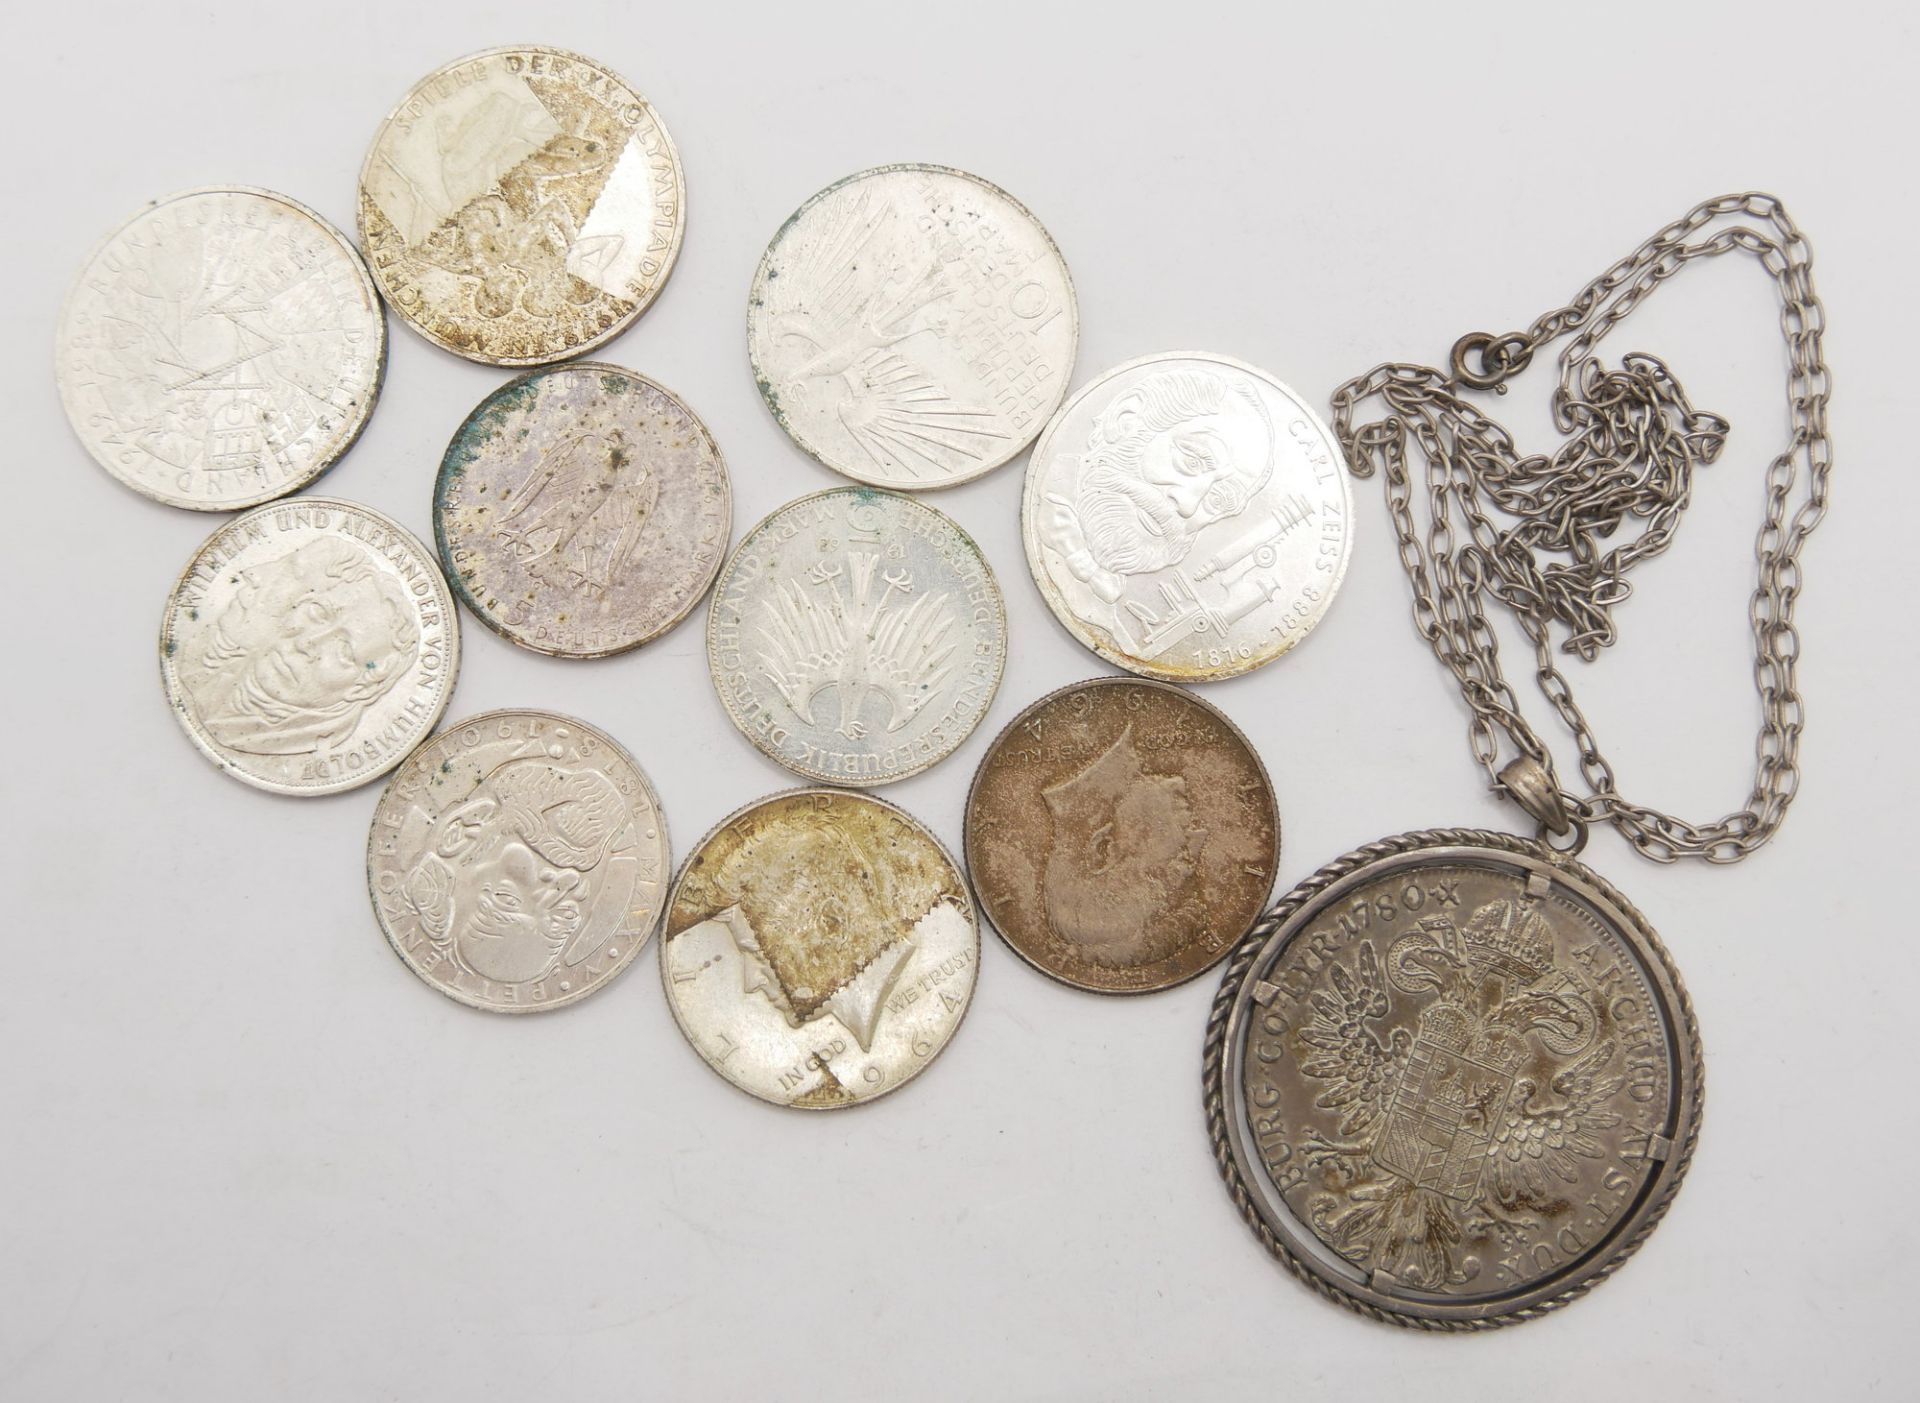 Lot Silbermünzen & Medaillen, dabei 4x 10 Mark, sowie 4x5 Mark BRD, 2x Kennedy Dollar 1964 und 1 - Image 2 of 2